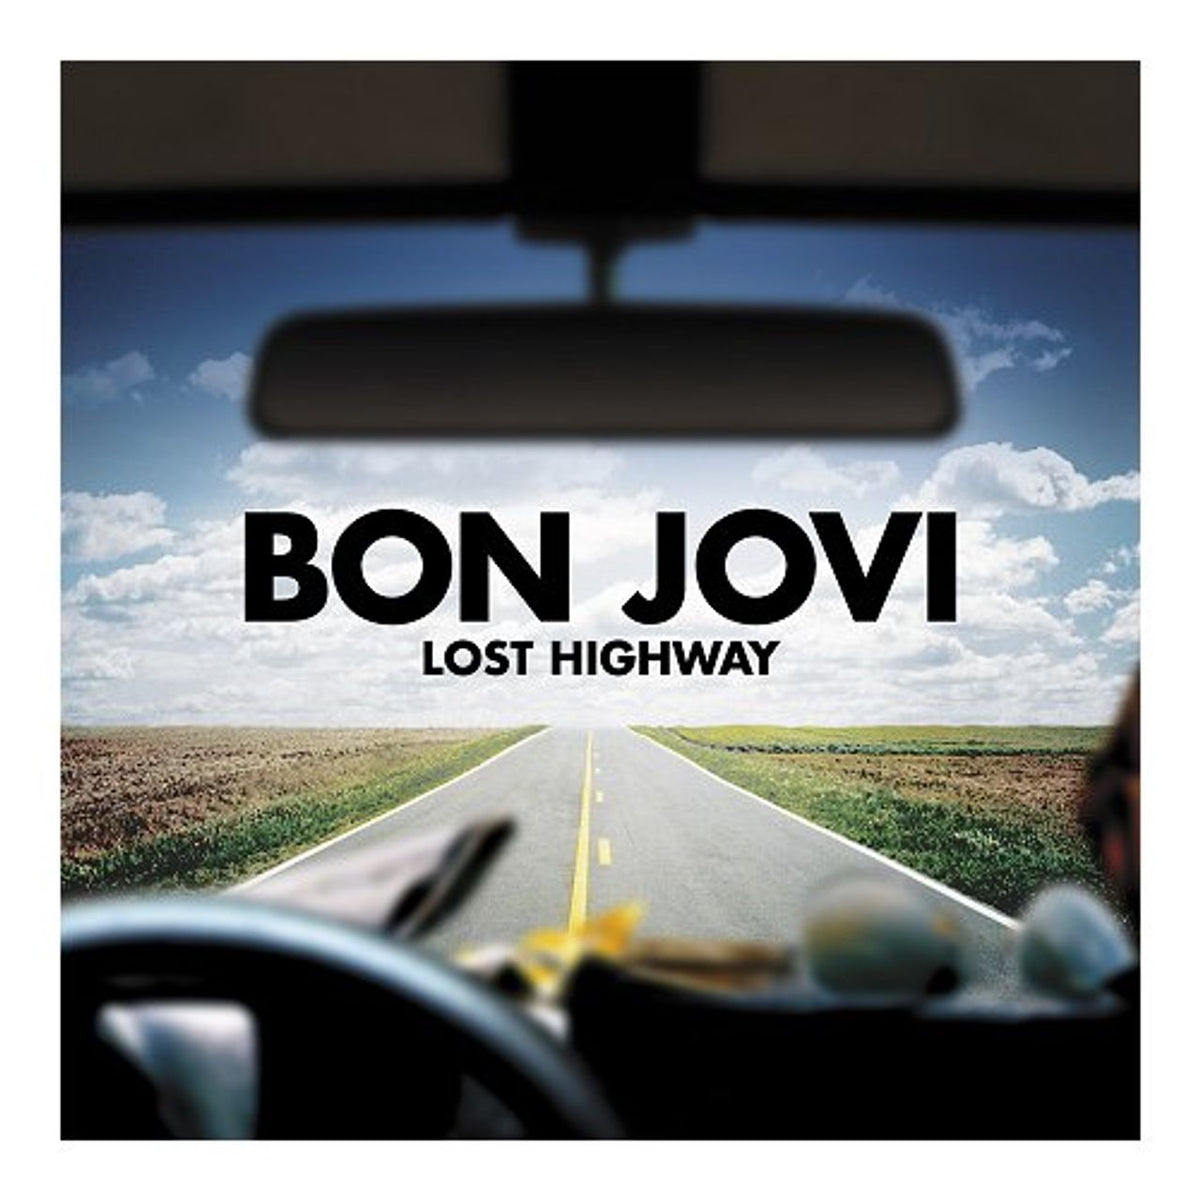 Bon Jovi Lost Highway UK CD album — RareVinyl.com